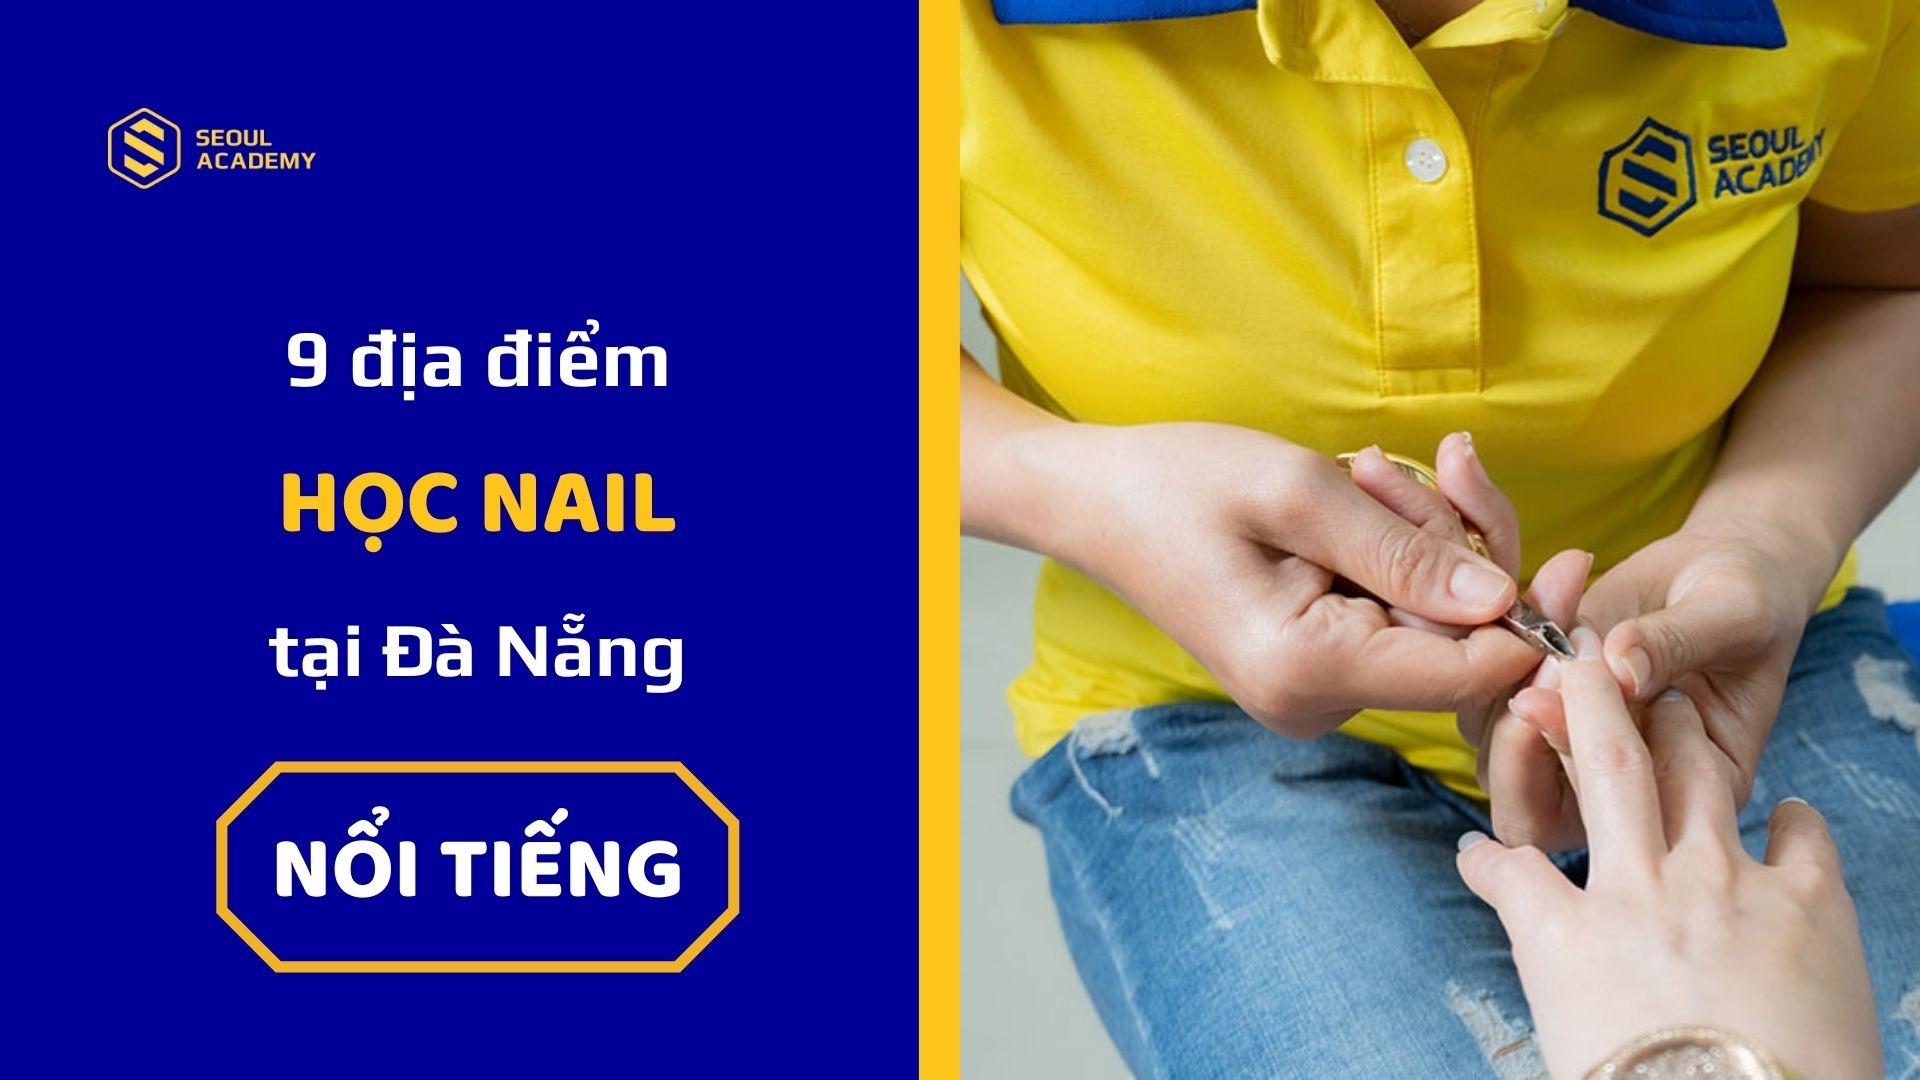 Seoul Academy có khóa học nail và chăm sóc móng nổi tiếng tại Đà Nẵng